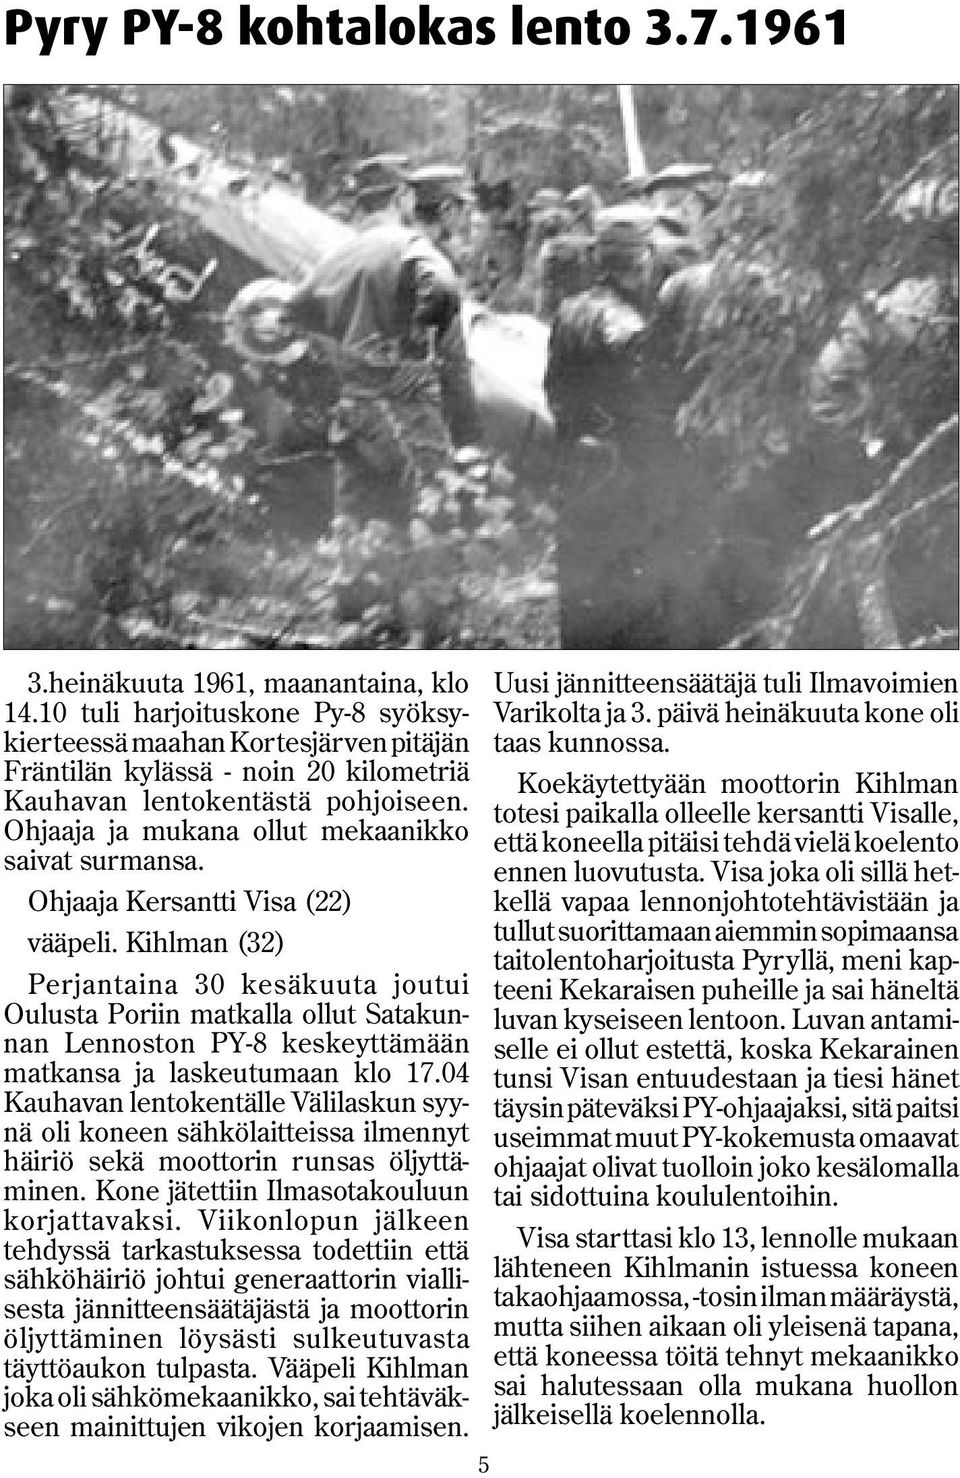 Ohjaaja Kersantti Visa (22) vääpeli. Kihlman (32) Perjantaina 30 kesäkuuta joutui Oulusta Poriin matkalla ollut Satakunnan Lennoston PY-8 keskeyttämään matkansa ja laskeutumaan klo 17.